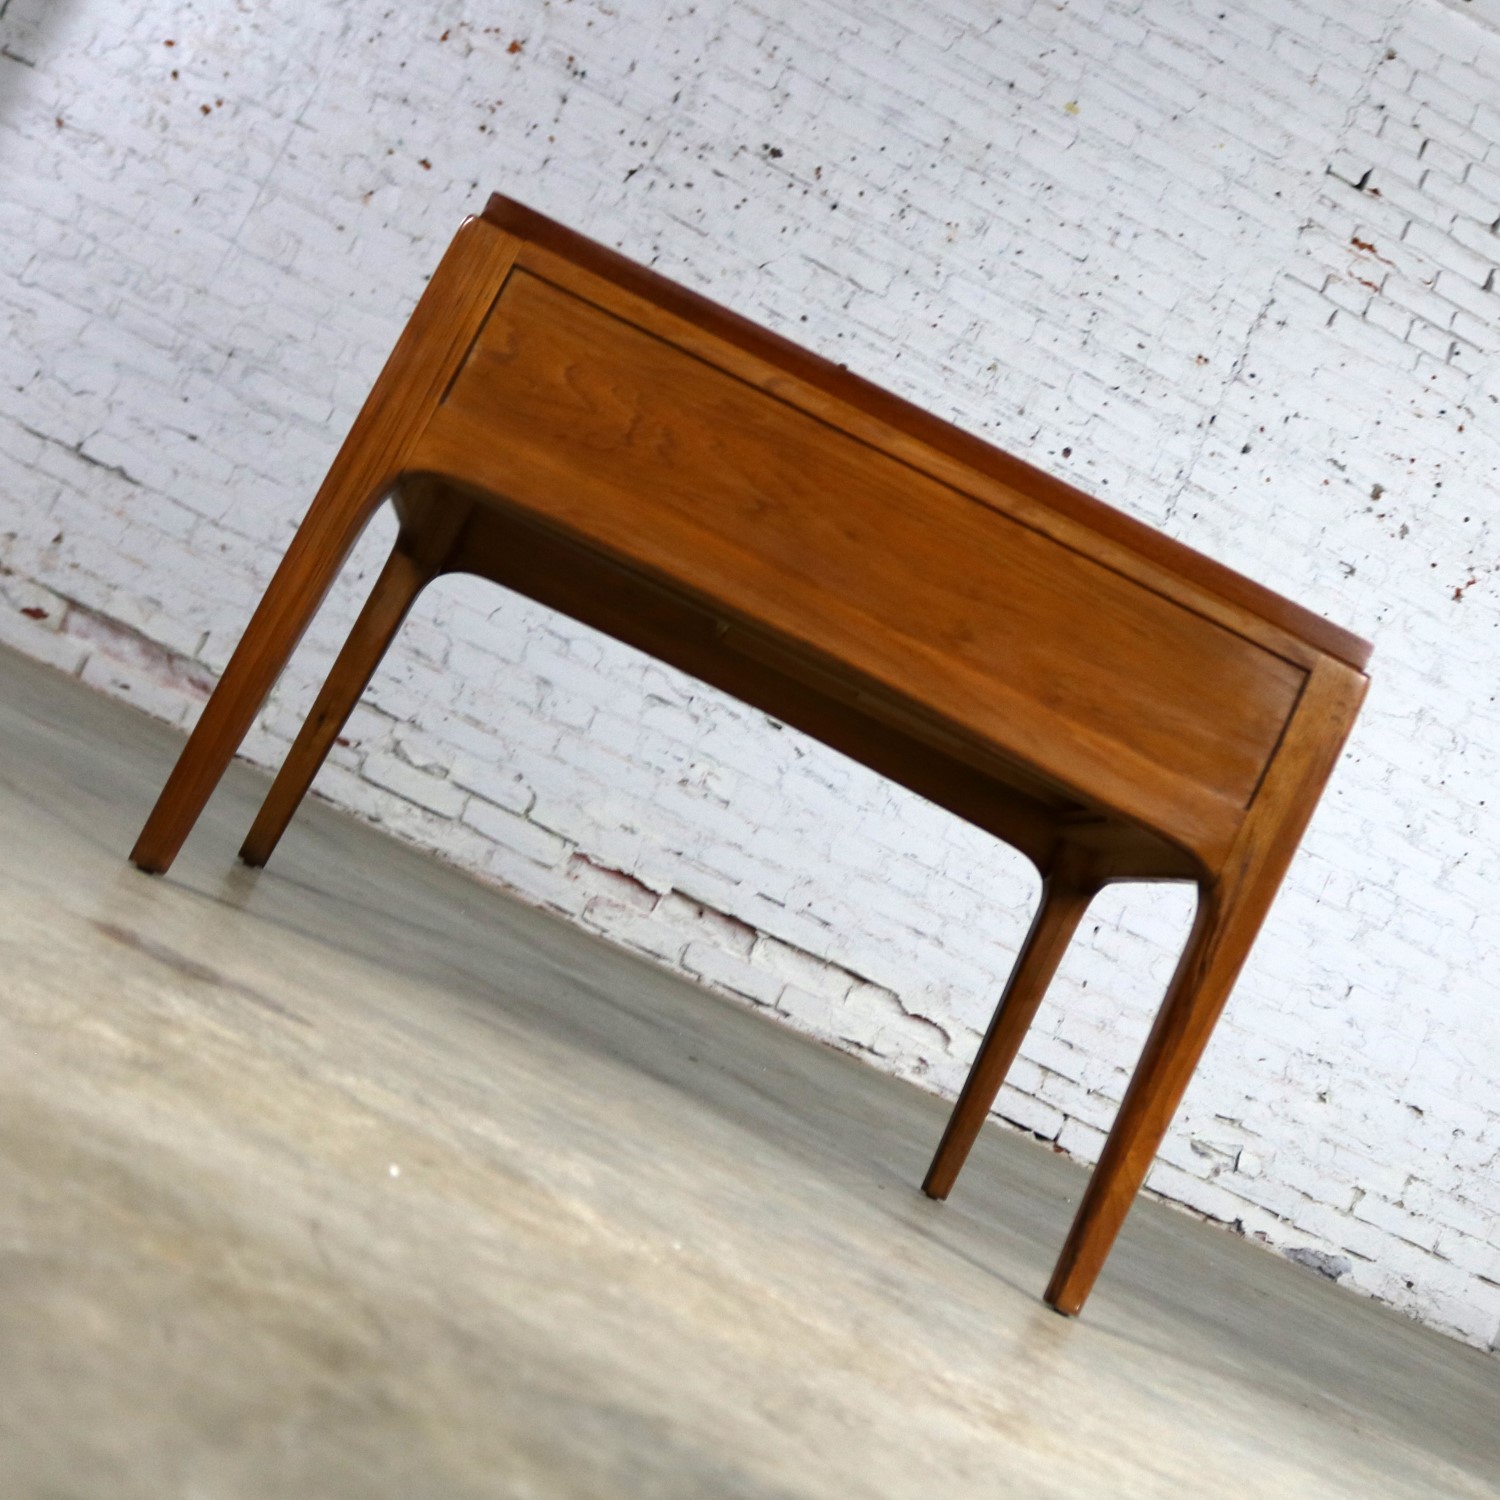 Lane Rhythm Walnut End Table with Drawer Mid Century Modern